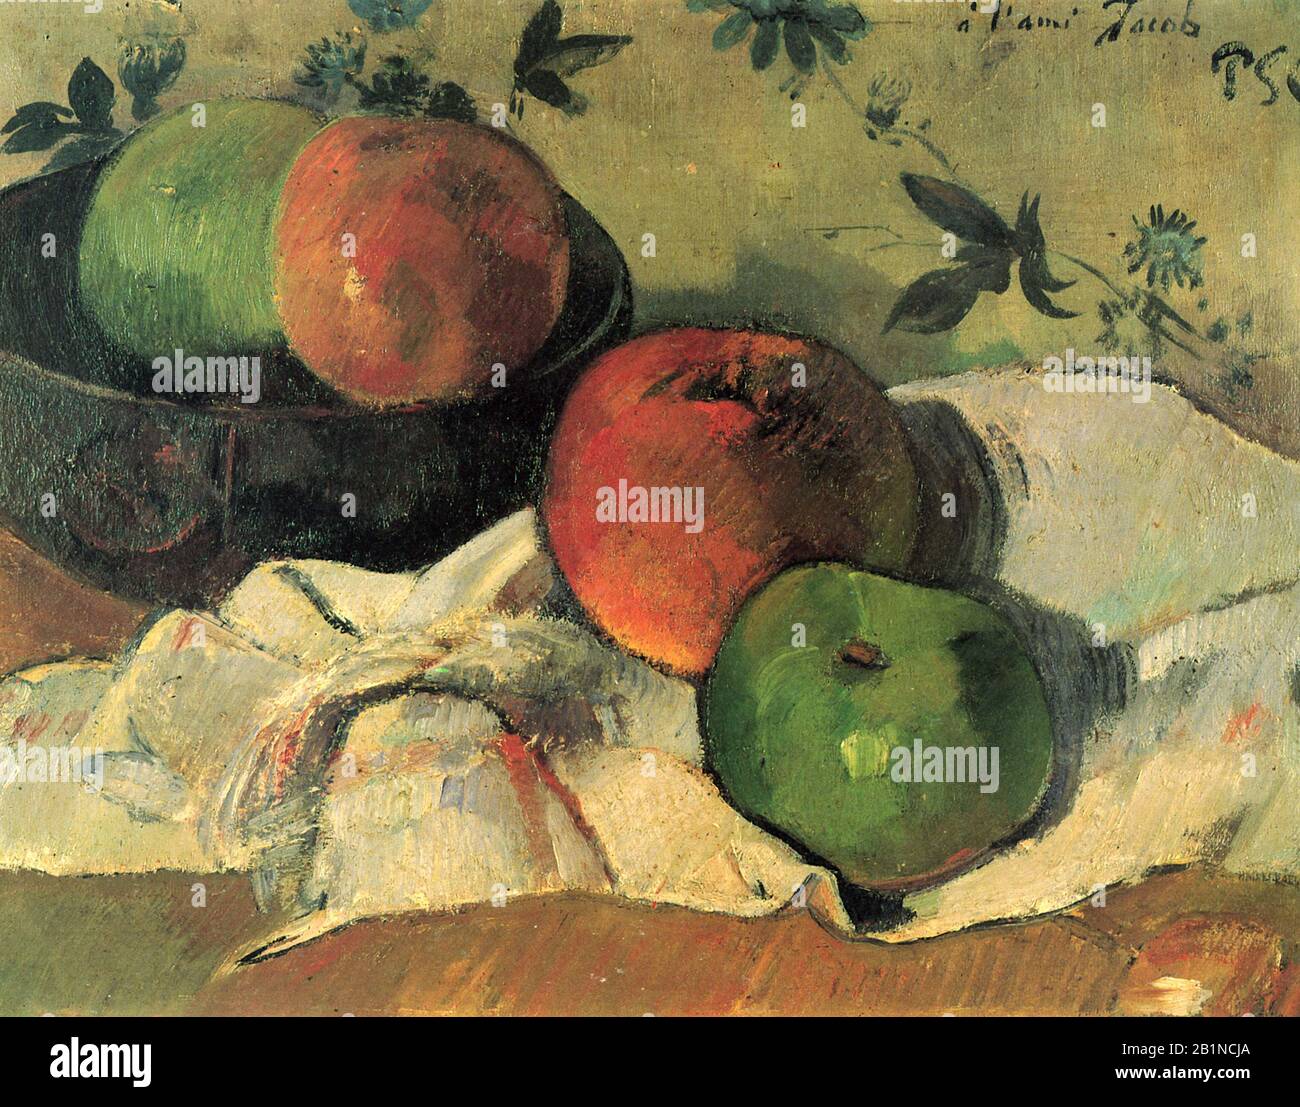 ) Pittura 19th Secolo di Paul Gauguin - immagine Ad Altissima risoluzione e di qualità Foto Stock